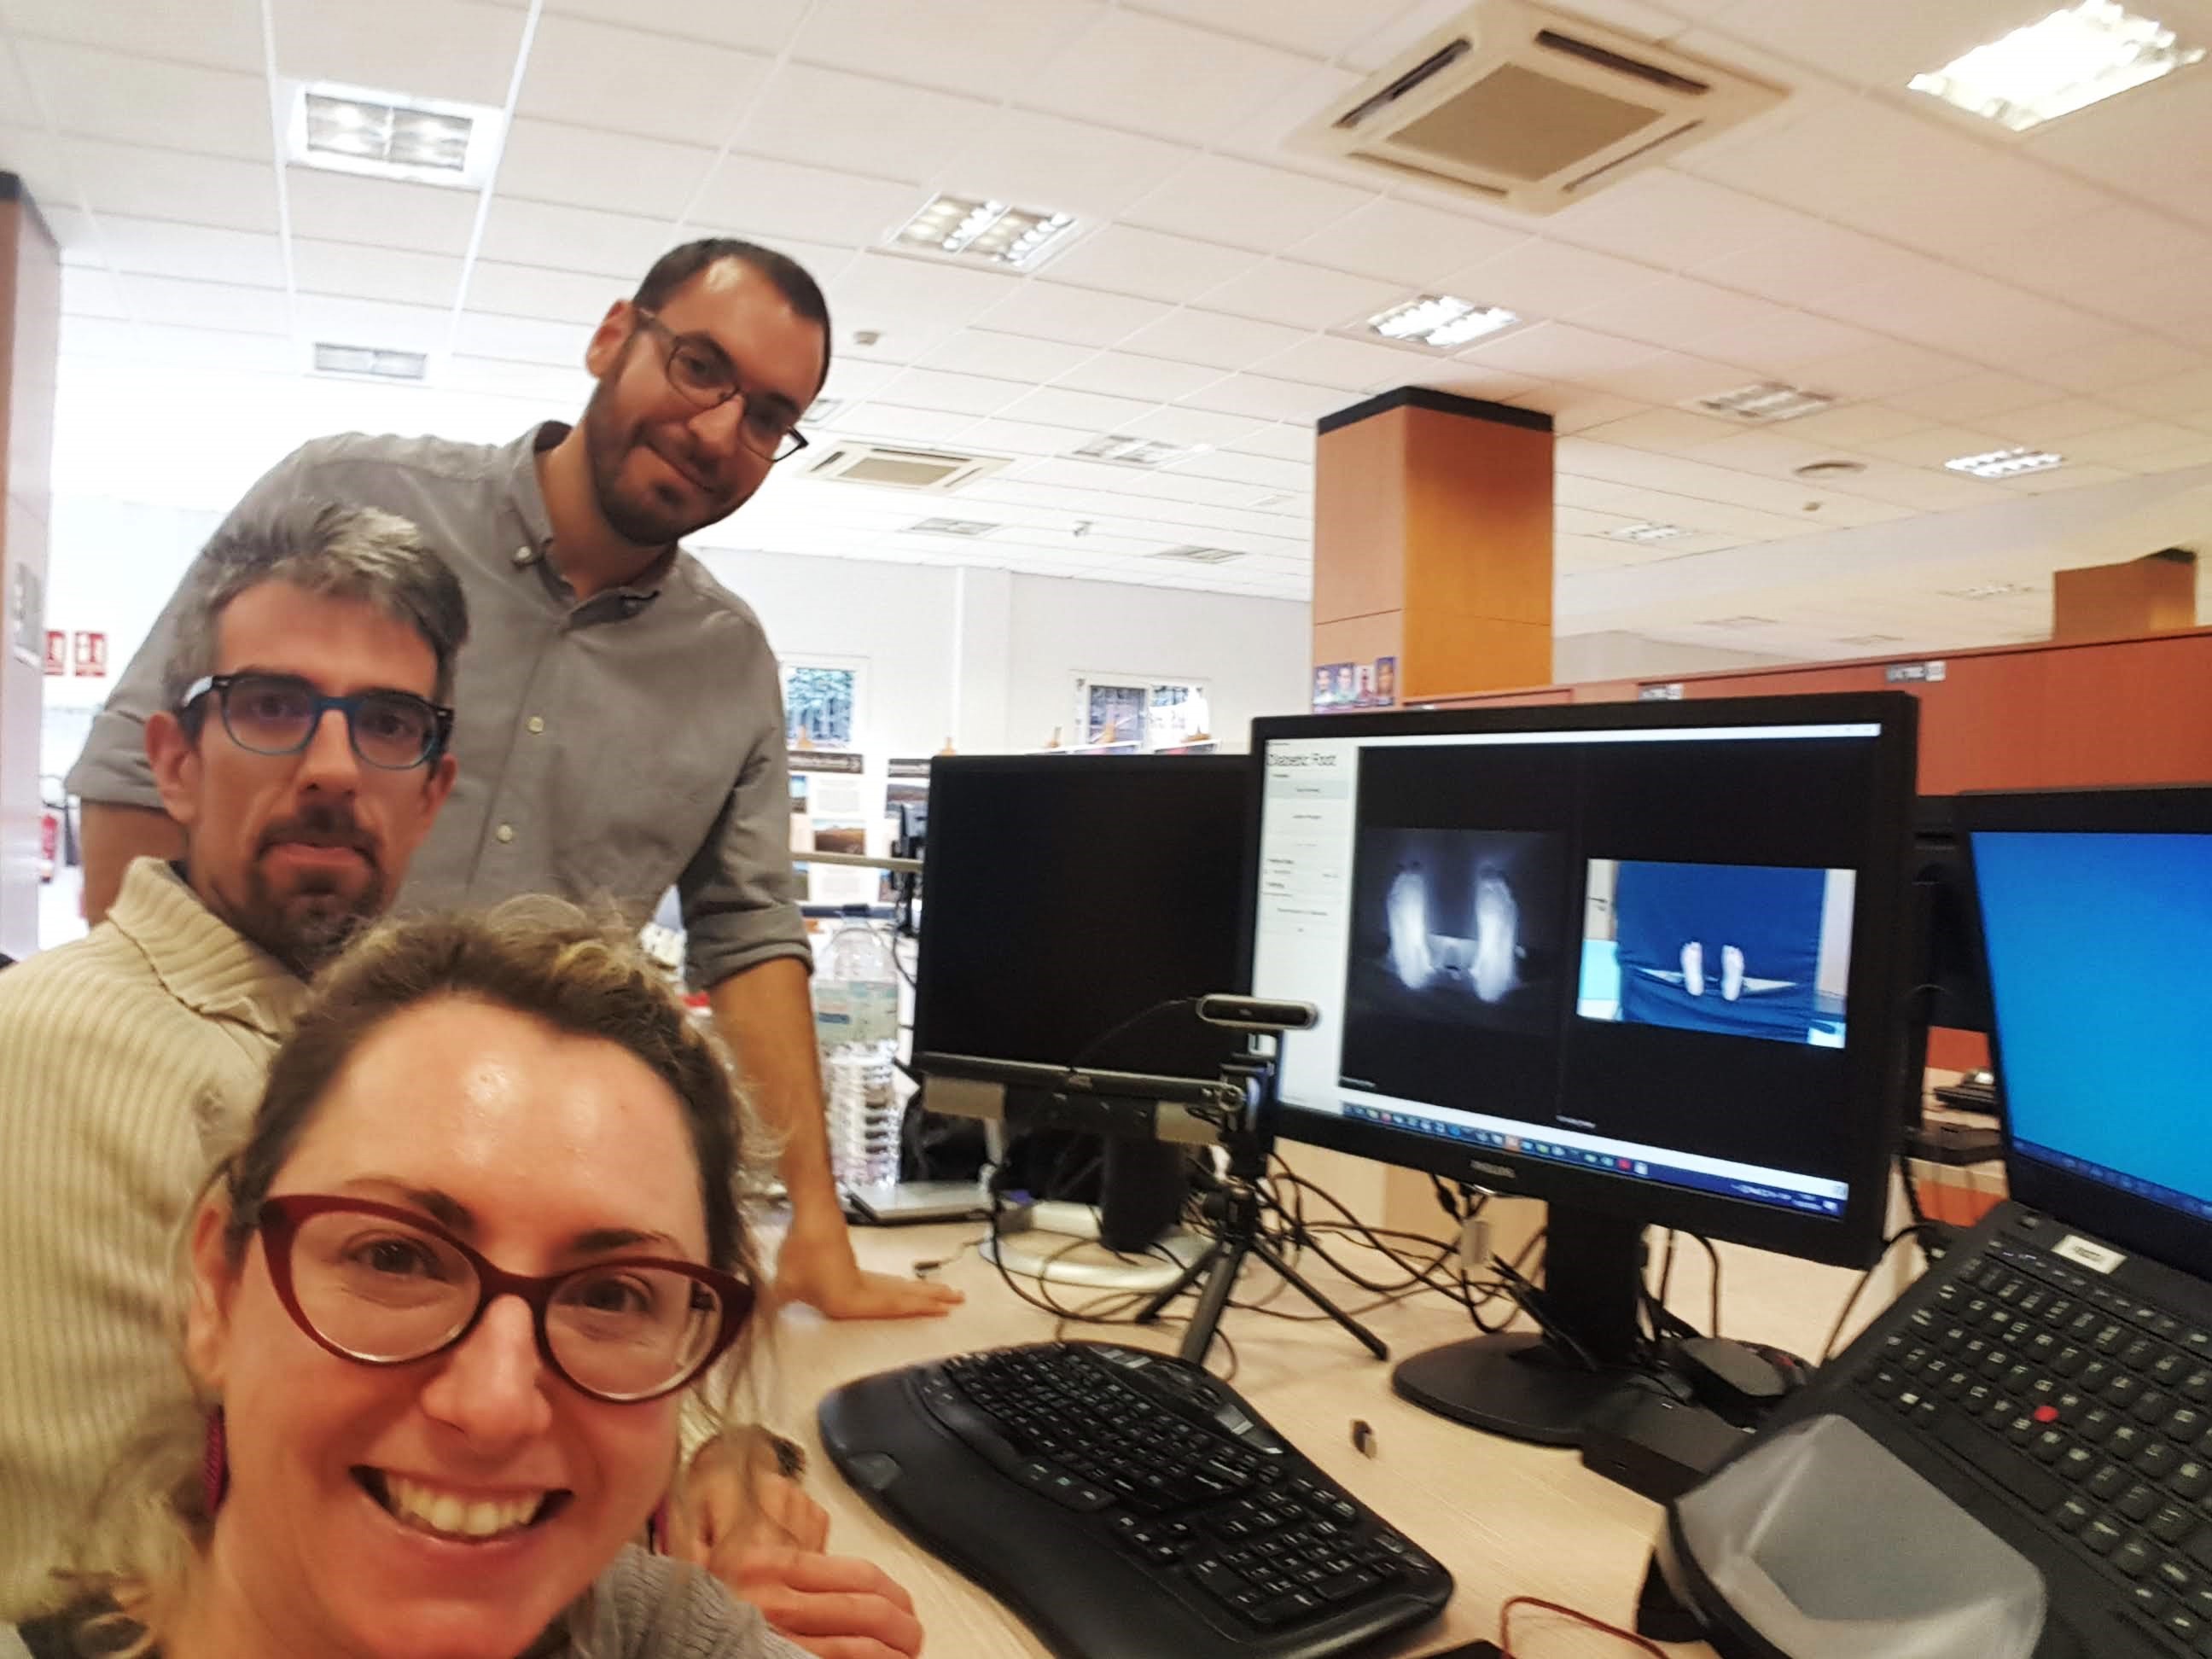 Ignacio Sidrach-Cardona, Carlos Luque y Sara González, ingenieros de IACTEC, durante el desarrollo de la aplicación de software de PINRELL en las instalaciones de IACTEC (enero 2020). Crédito: Sara González